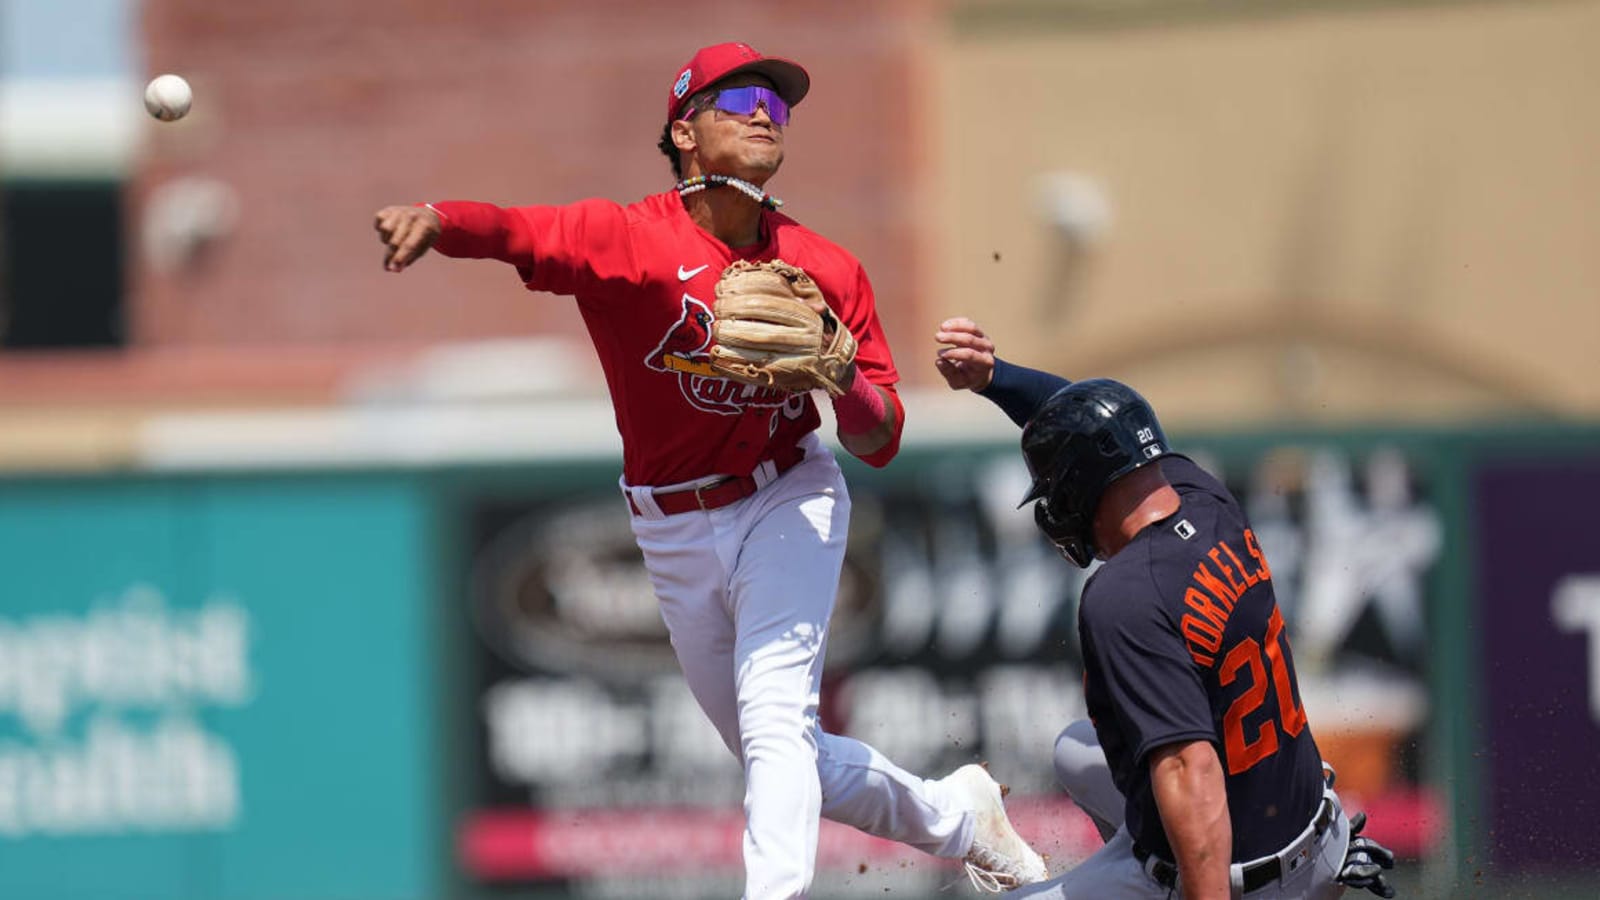 St. Louis Cardinals Call Up Top Prospect Masyn Winn, Send Lars Nootbaar to Injured List